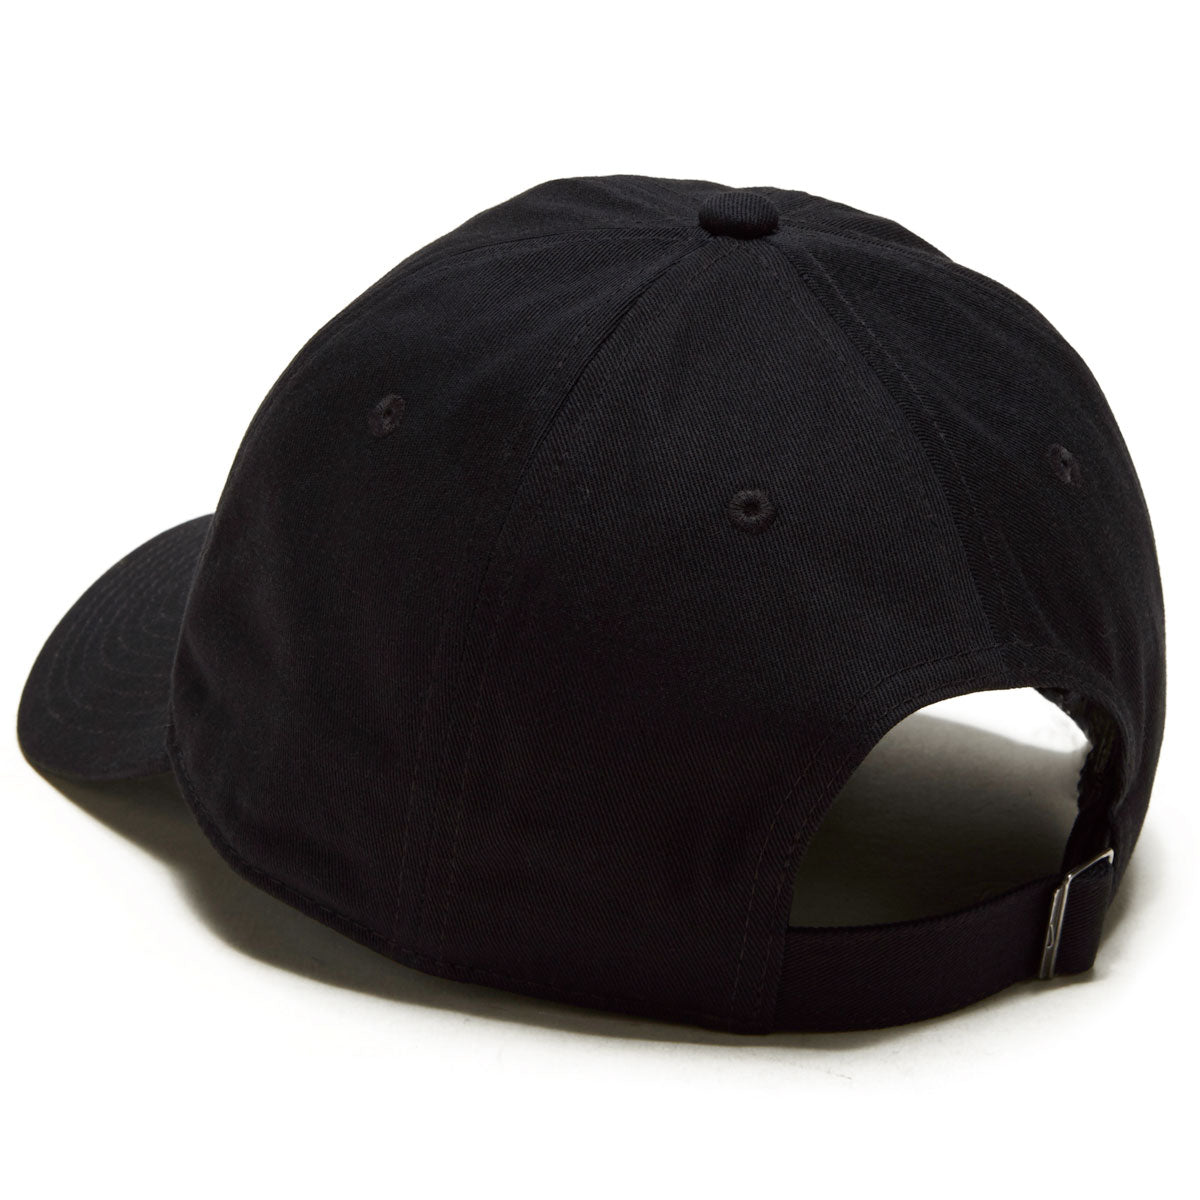 Nike SB Futbol Club Hat - Black/White – CCS